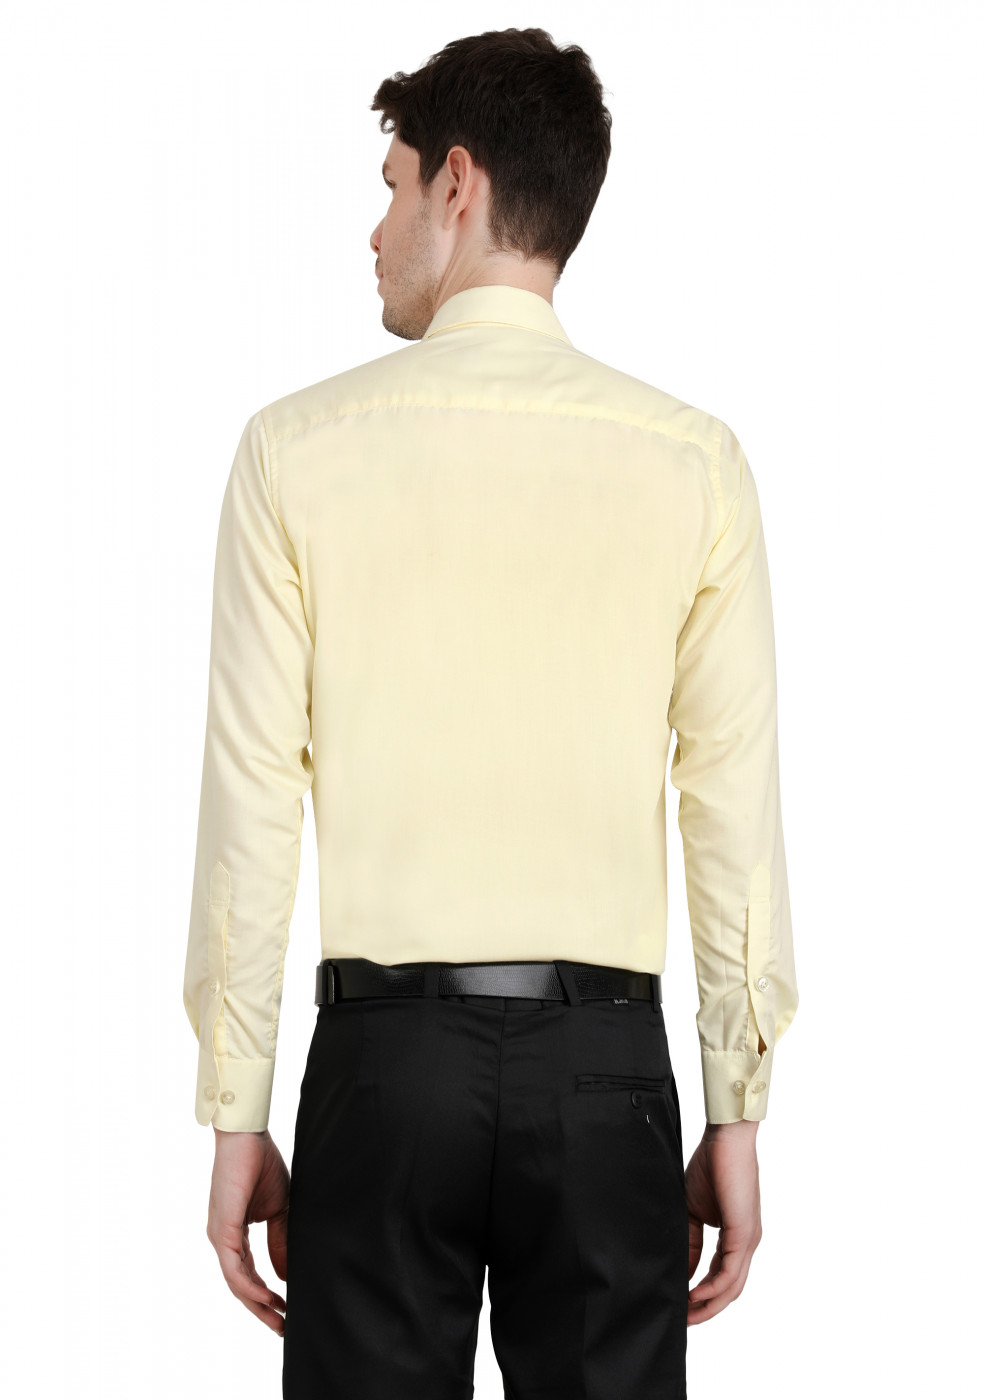 Lemon Plain PC Mix Cotton Shirt For Men